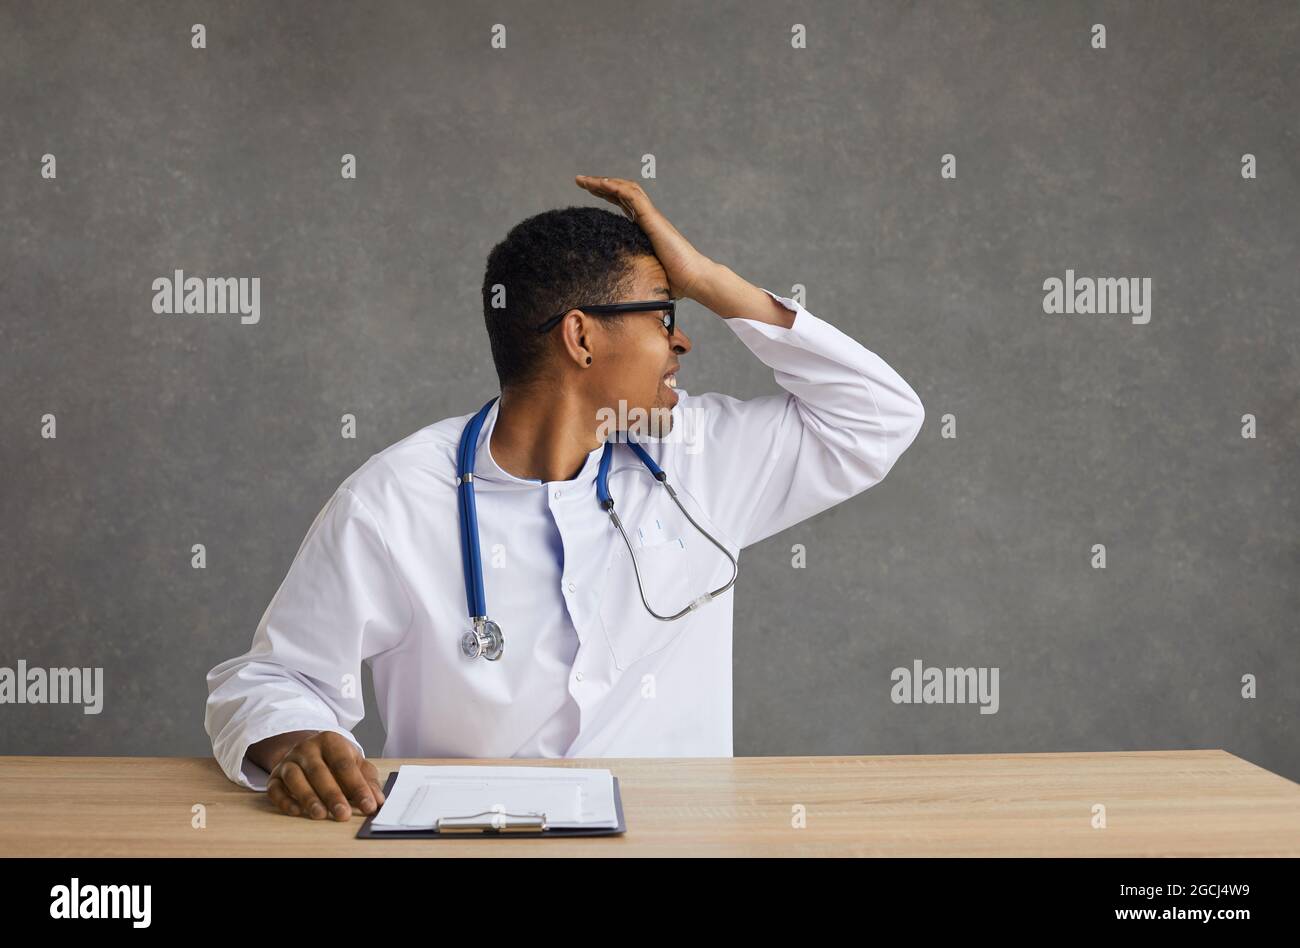 Inquiet médecin frustré assis à un bureau avec la main sur la tête prise en studio Banque D'Images